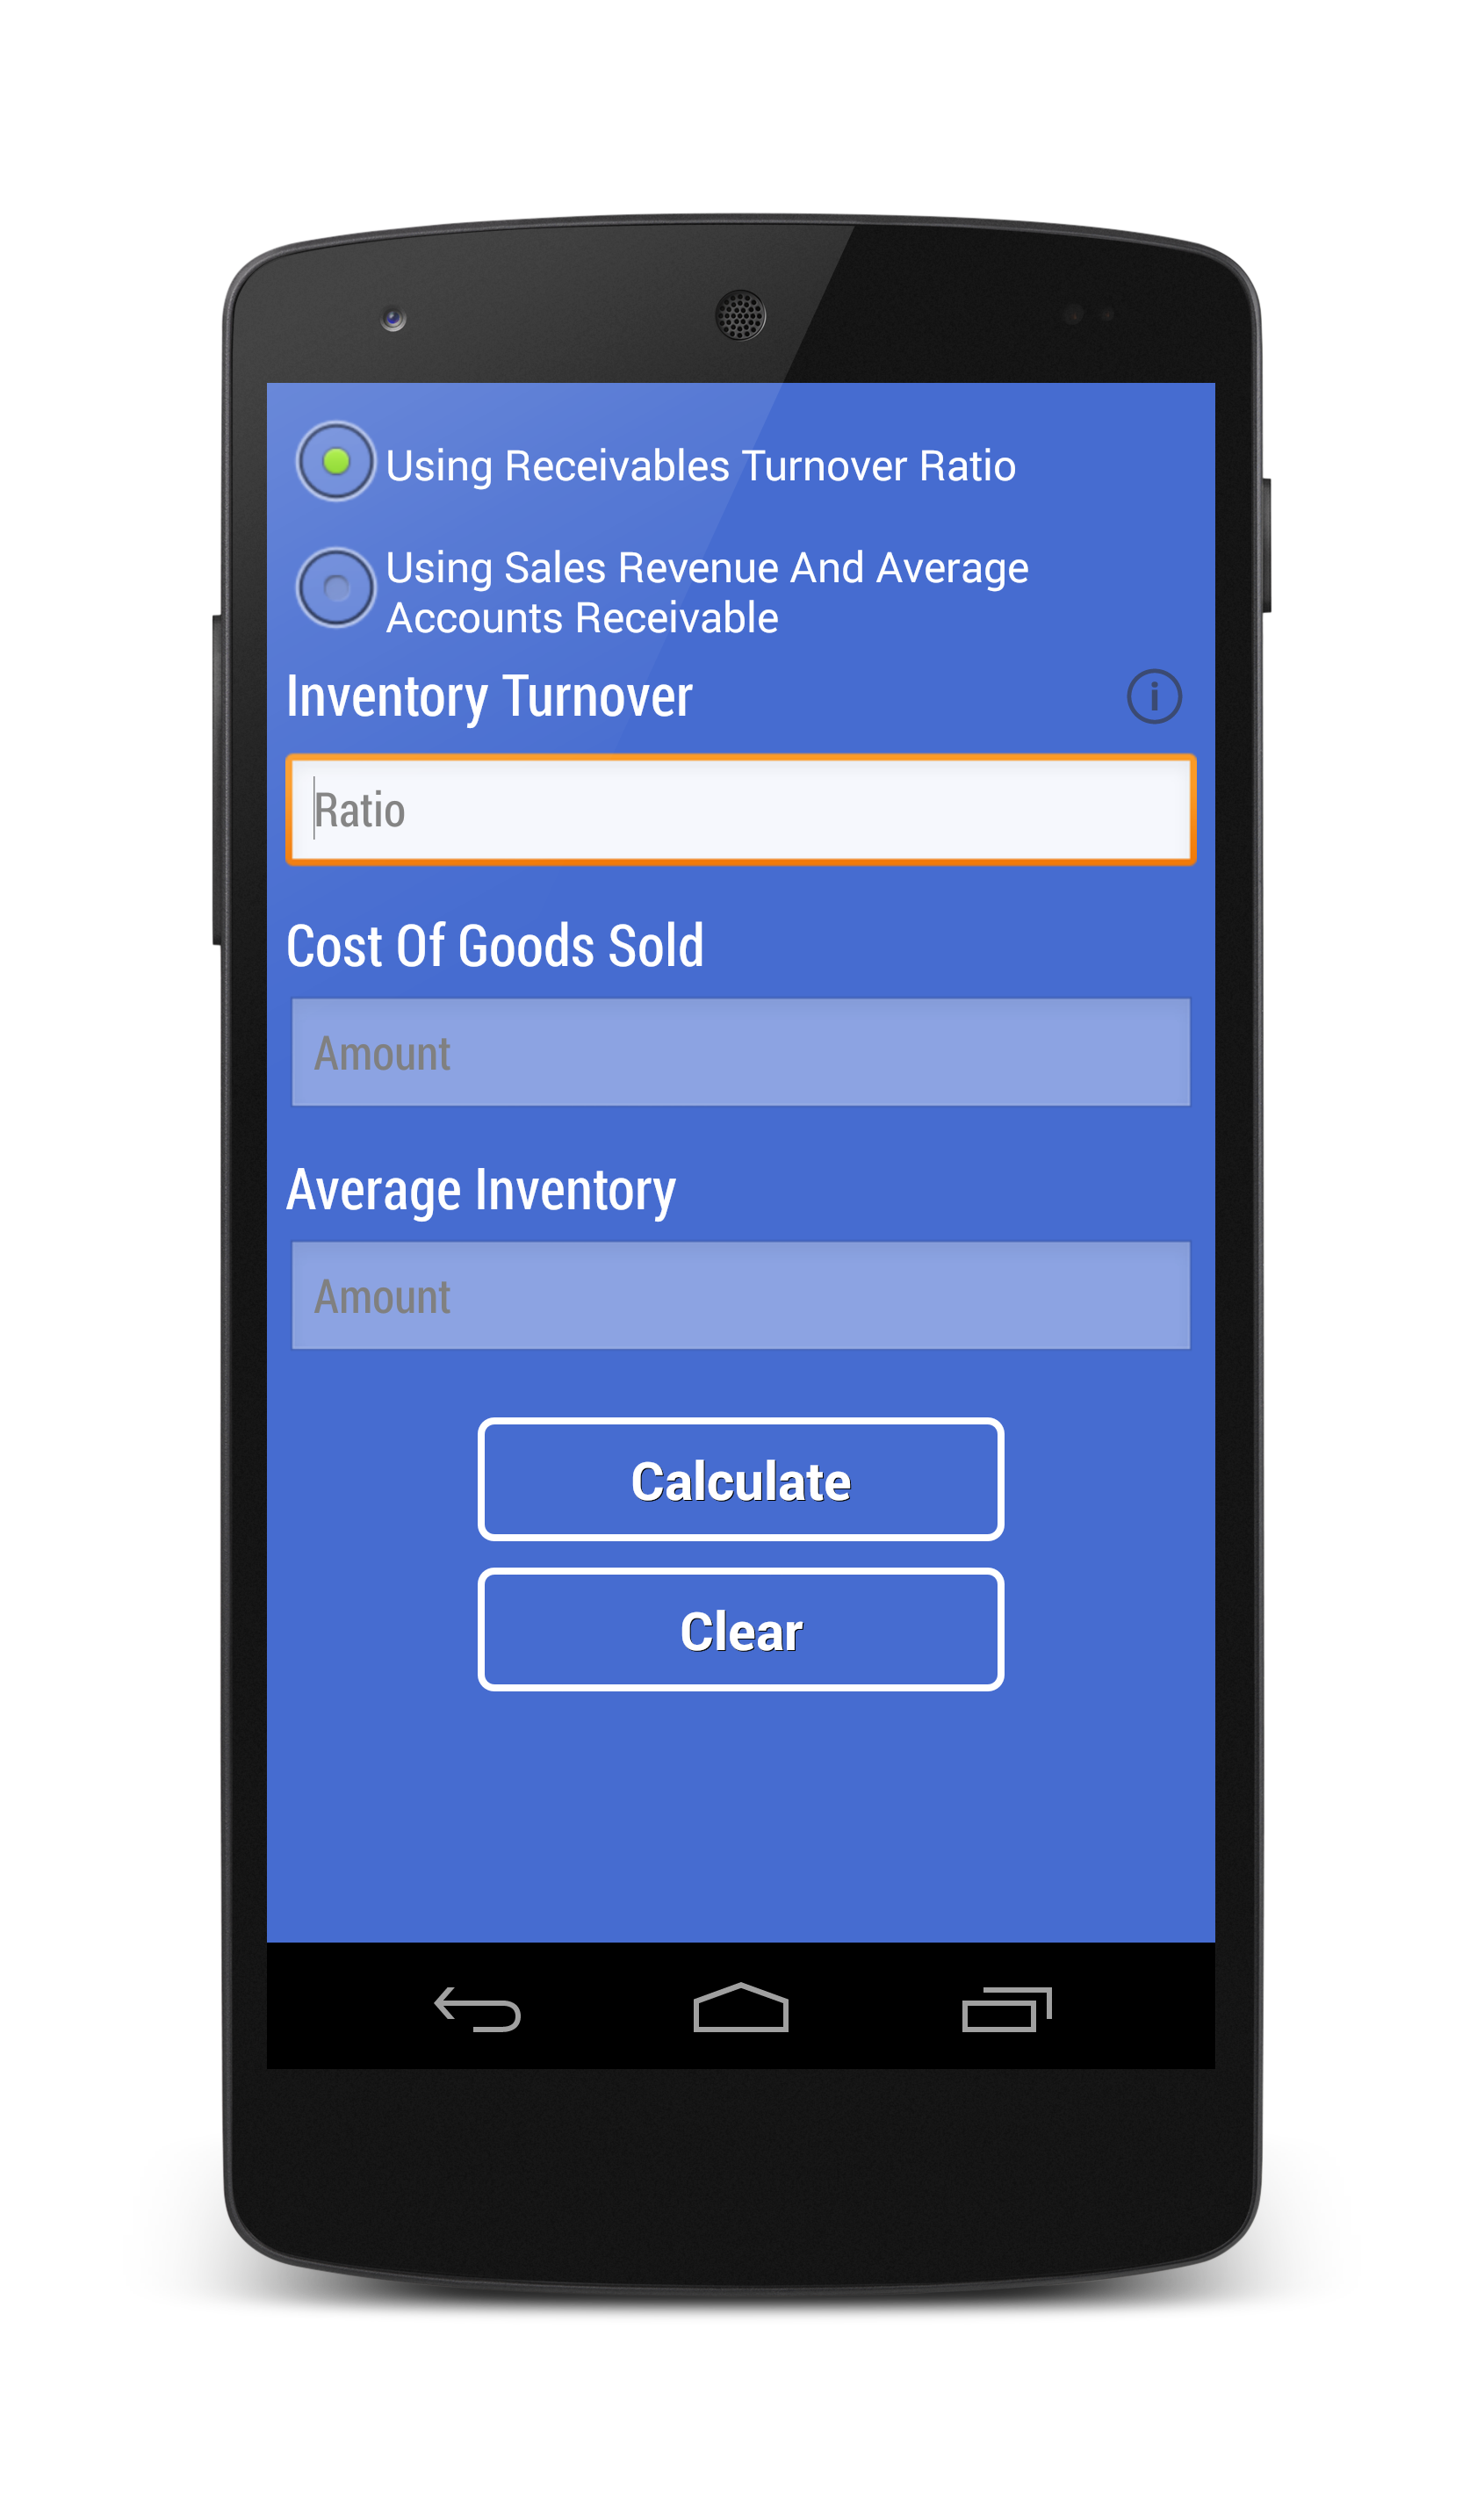 Android application Financial Calculators Pro screenshort